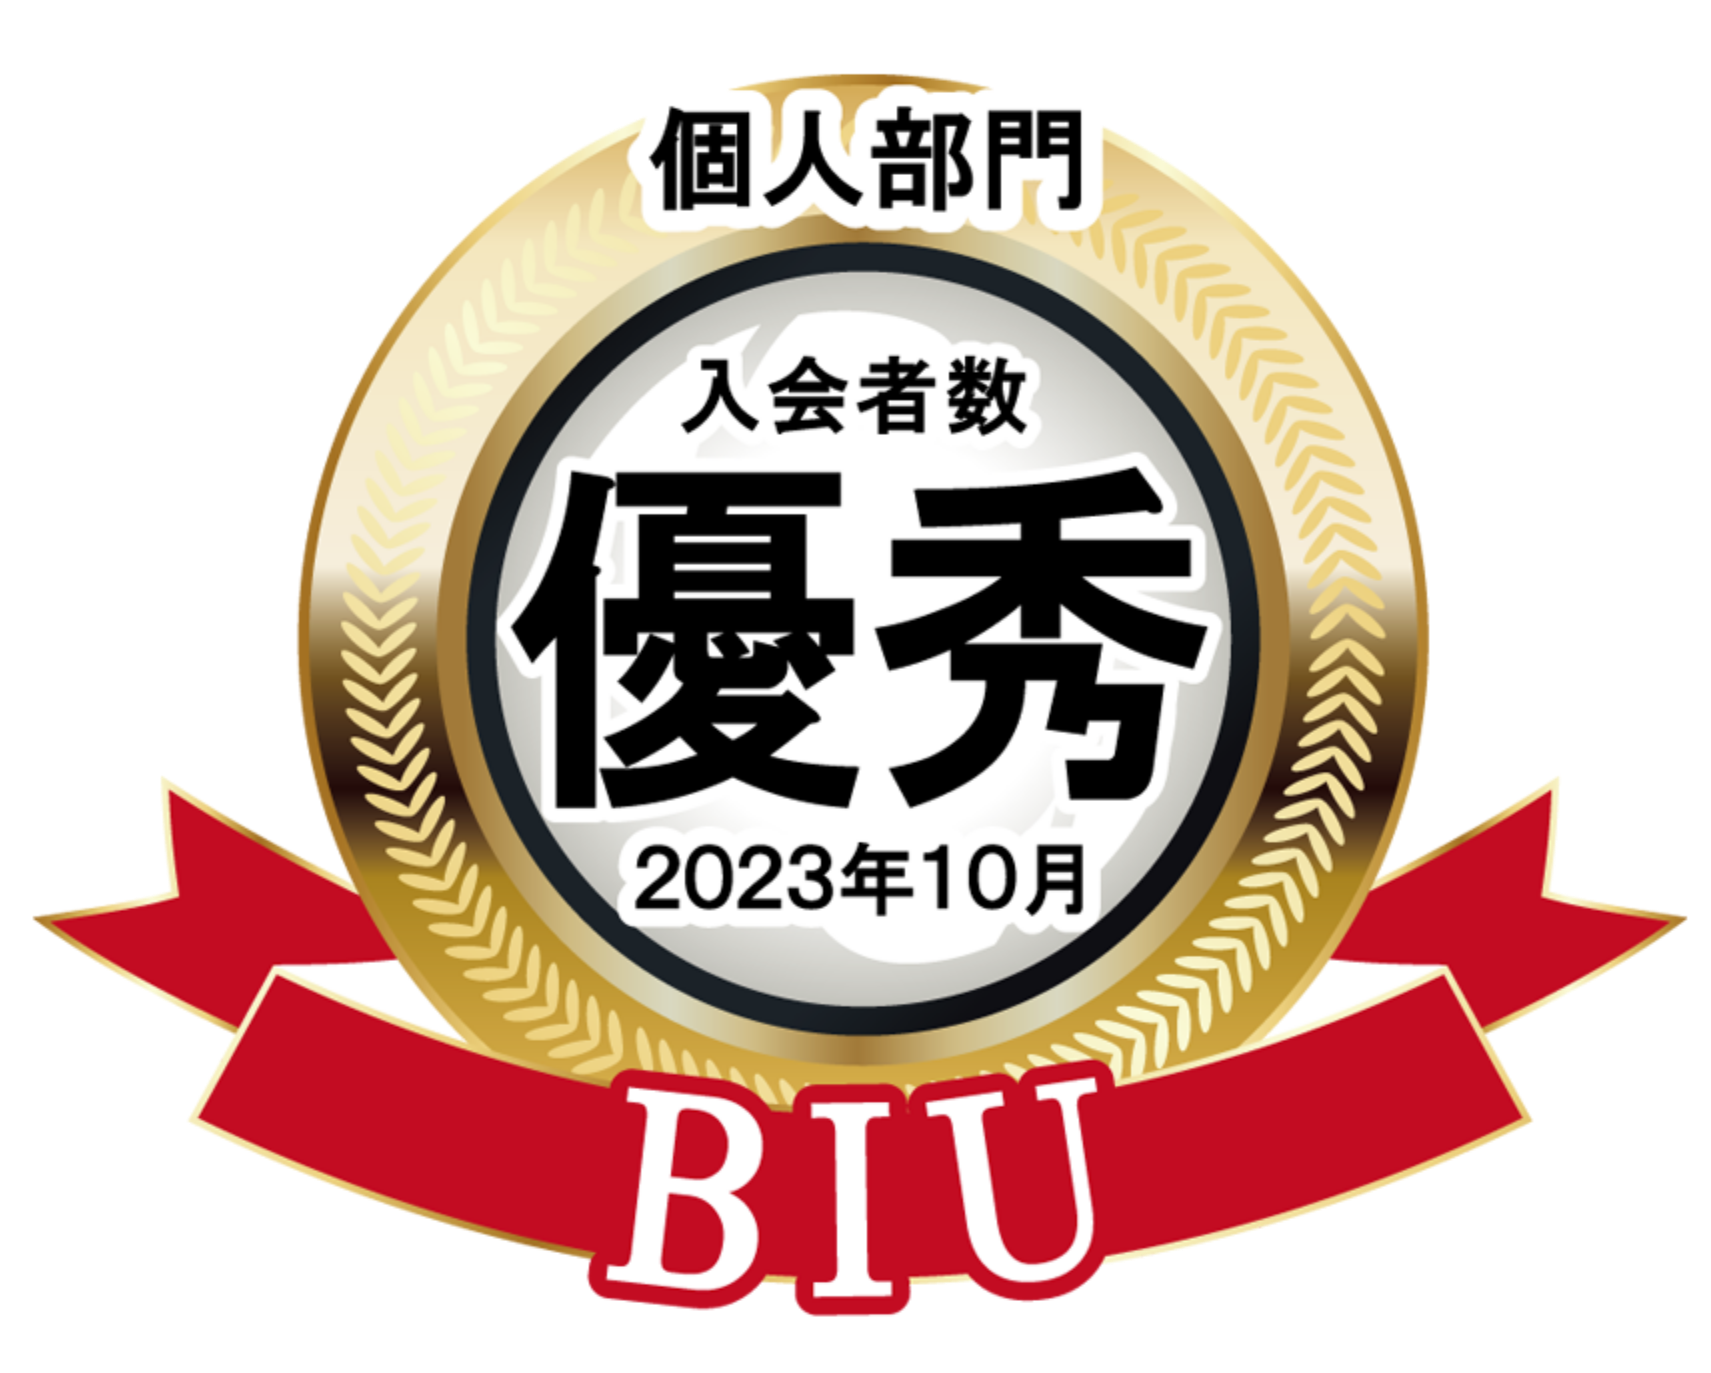 BIU 個人部門入会者数 優秀 2023年10月